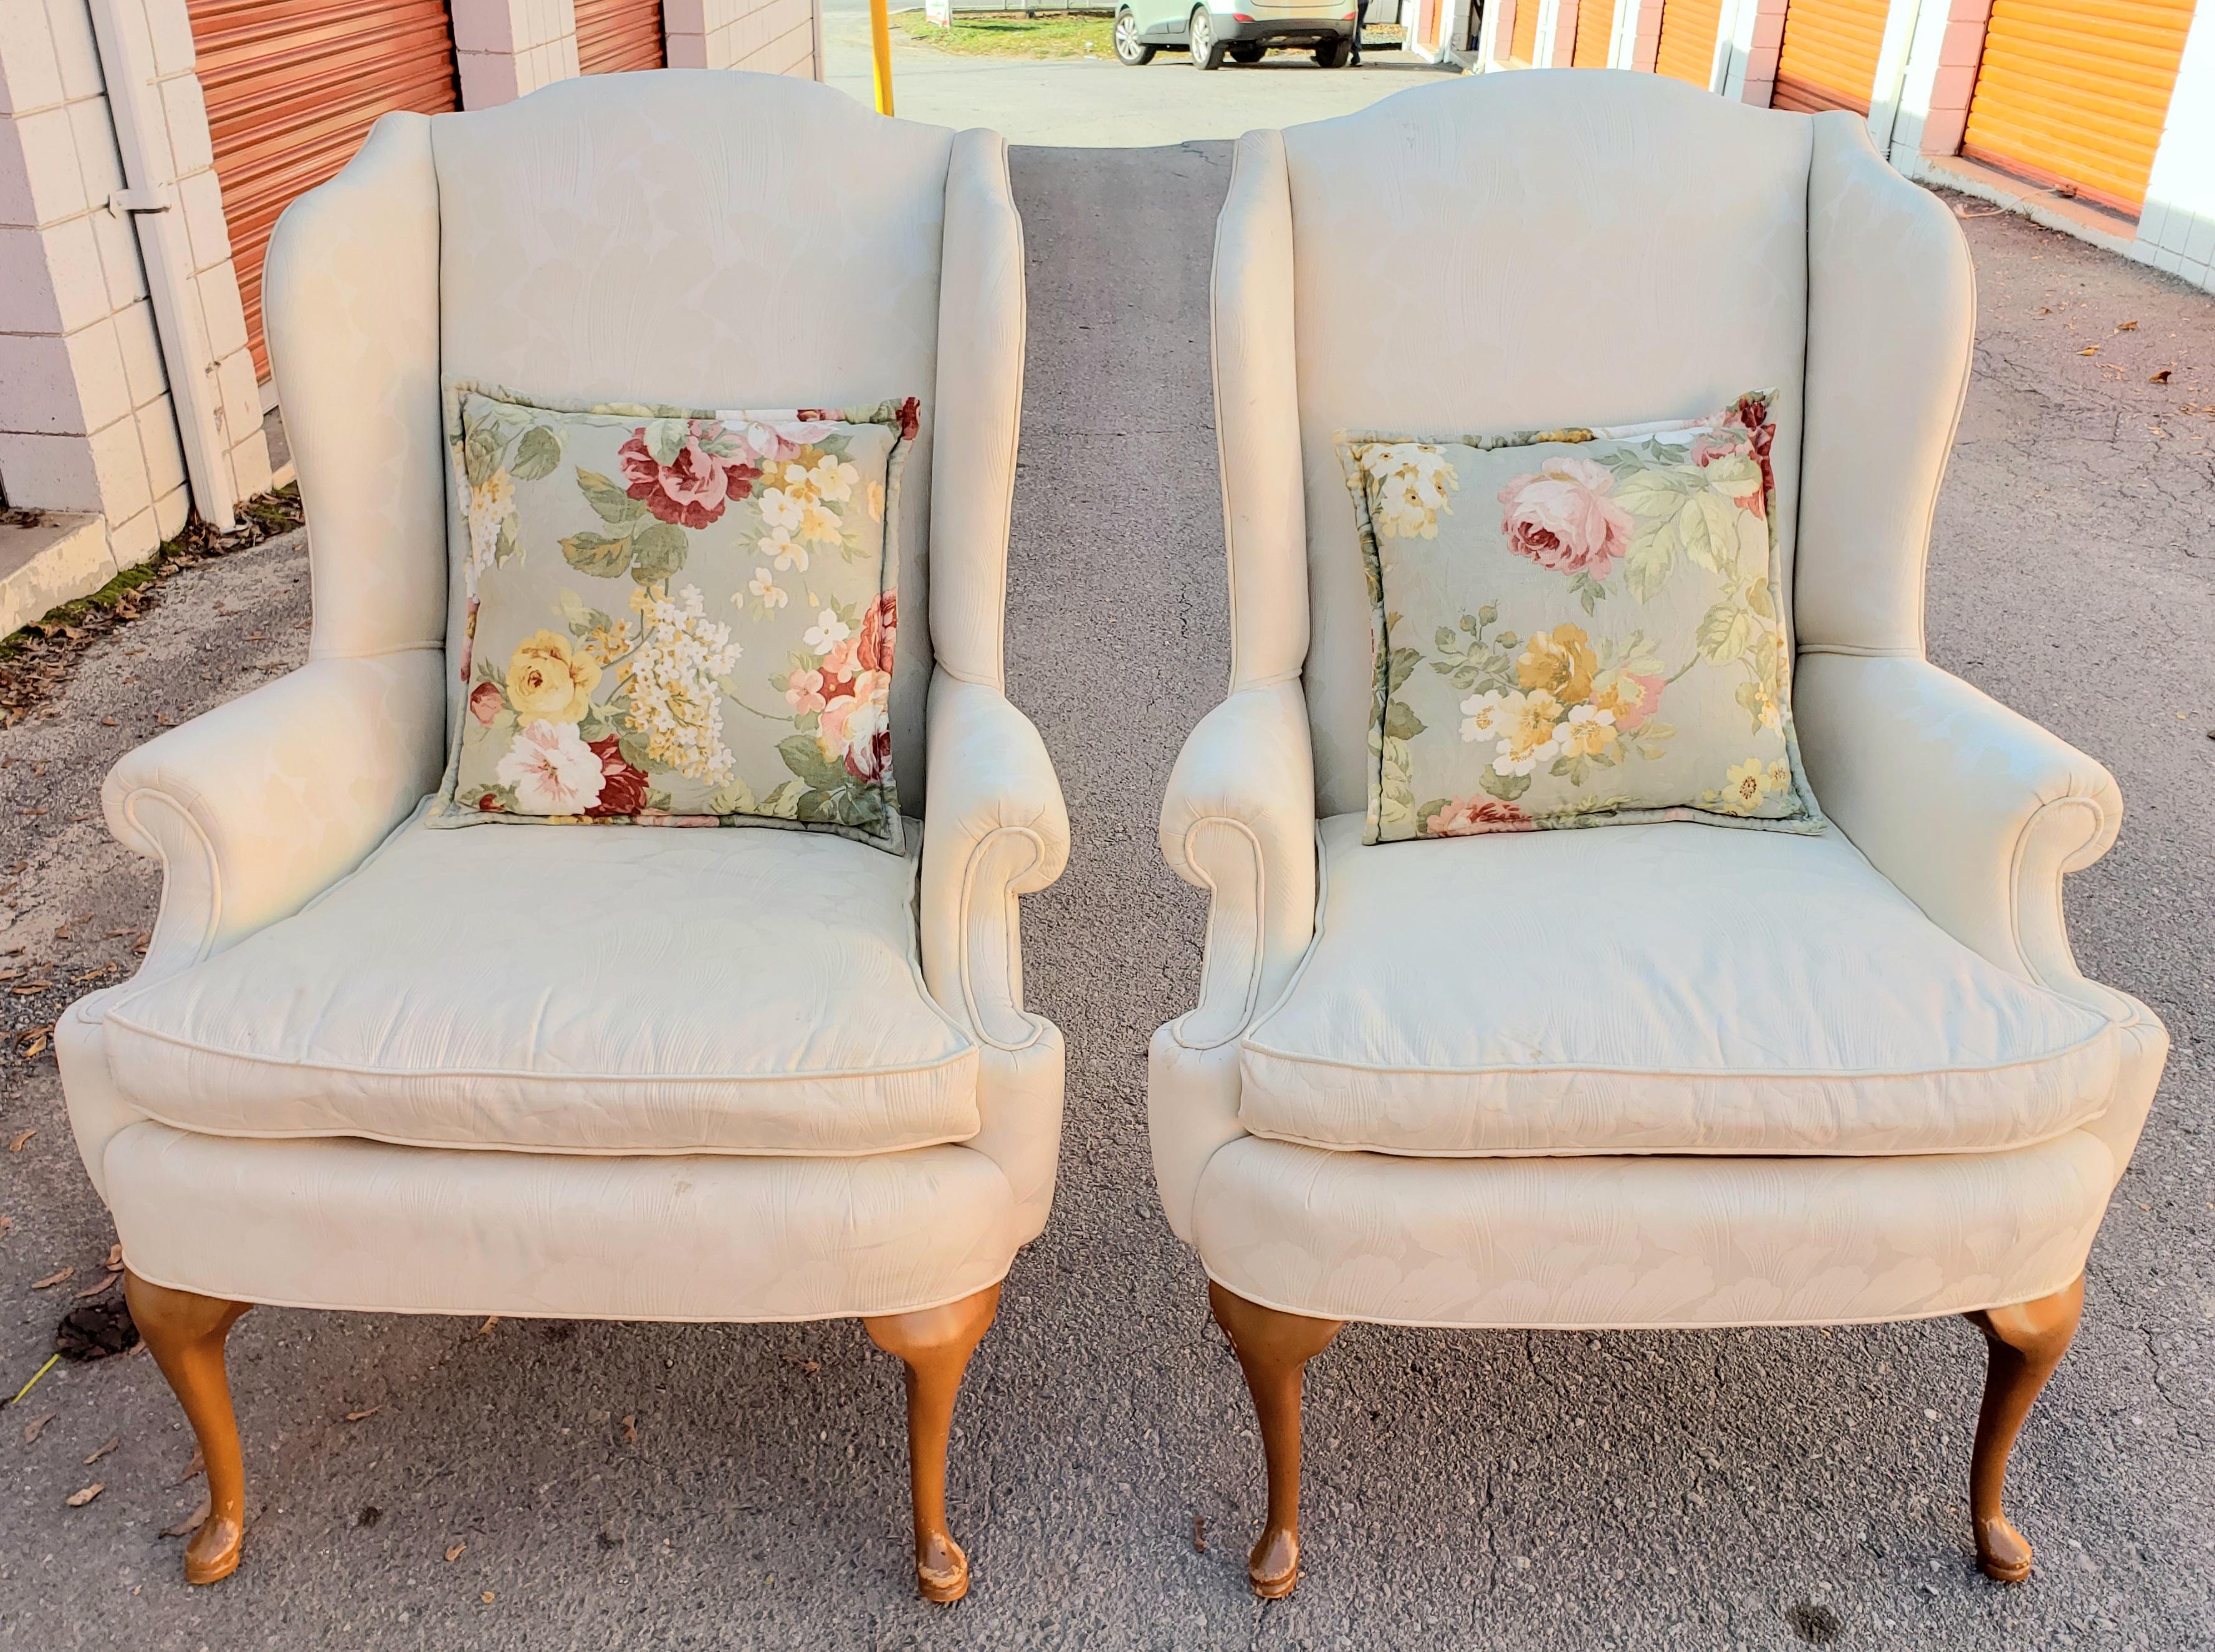 Atemberaubendes Paar Vintage-Stühle im Queen-Anne-Stil mit Ohrensessel in einem neutralen cremefarbenen Schweizer Punktstoff. (Ich glaube, der Hersteller ist Hickory, aber das Label ist nicht mehr vorhanden, da sie neu gepolstert wurden). Die Rahmen